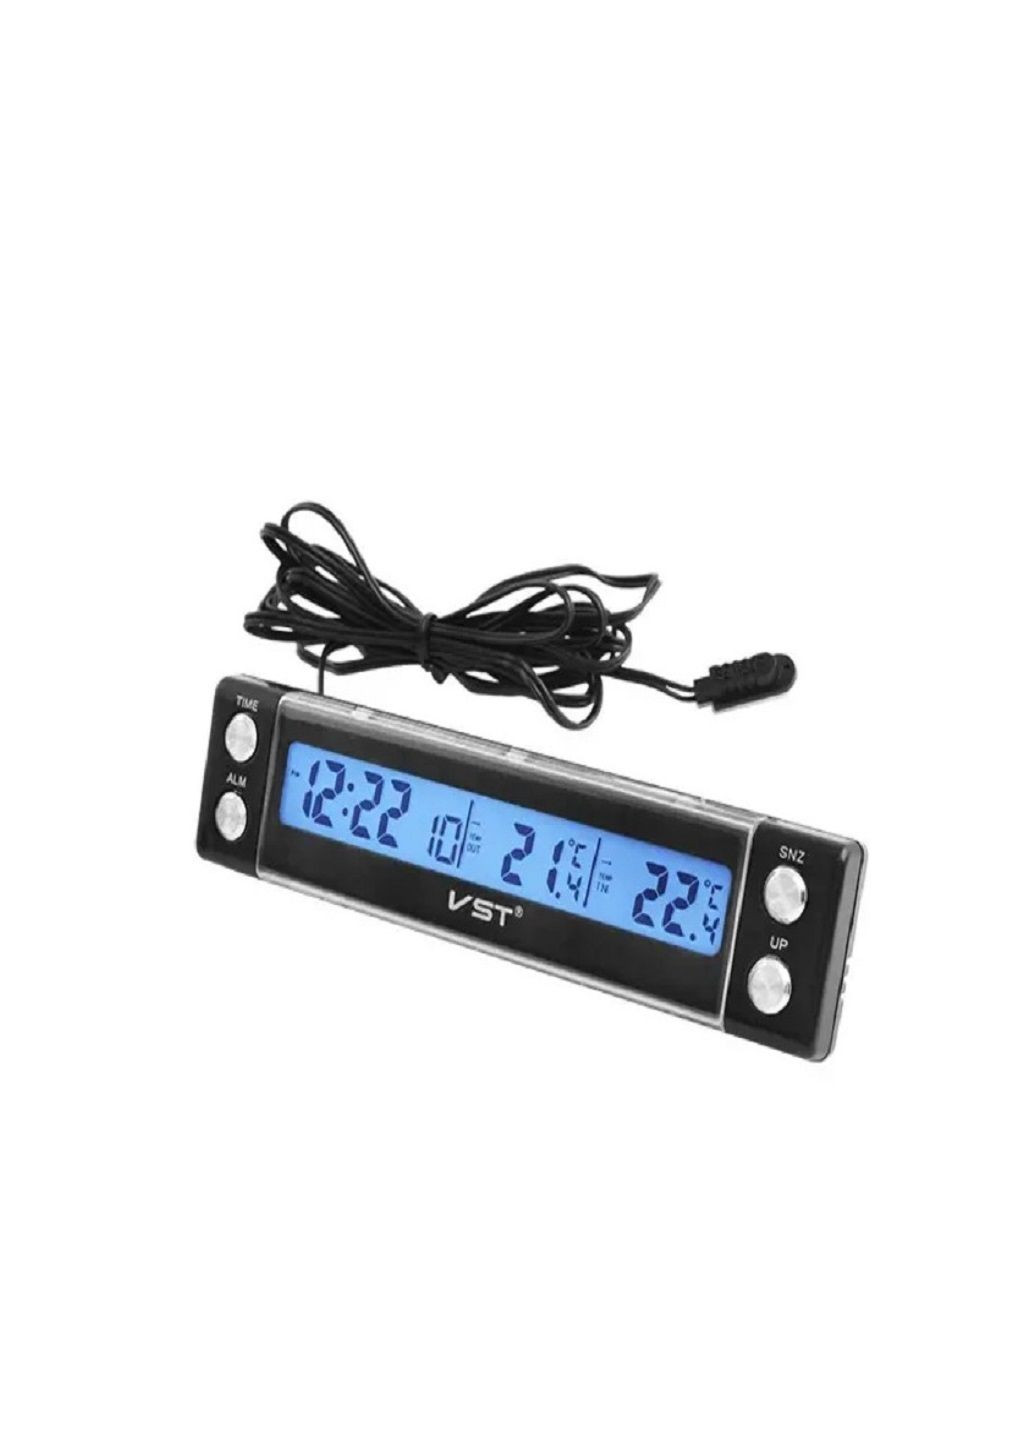 Автомобільний годинник 7036 з термометром VST (282927856)